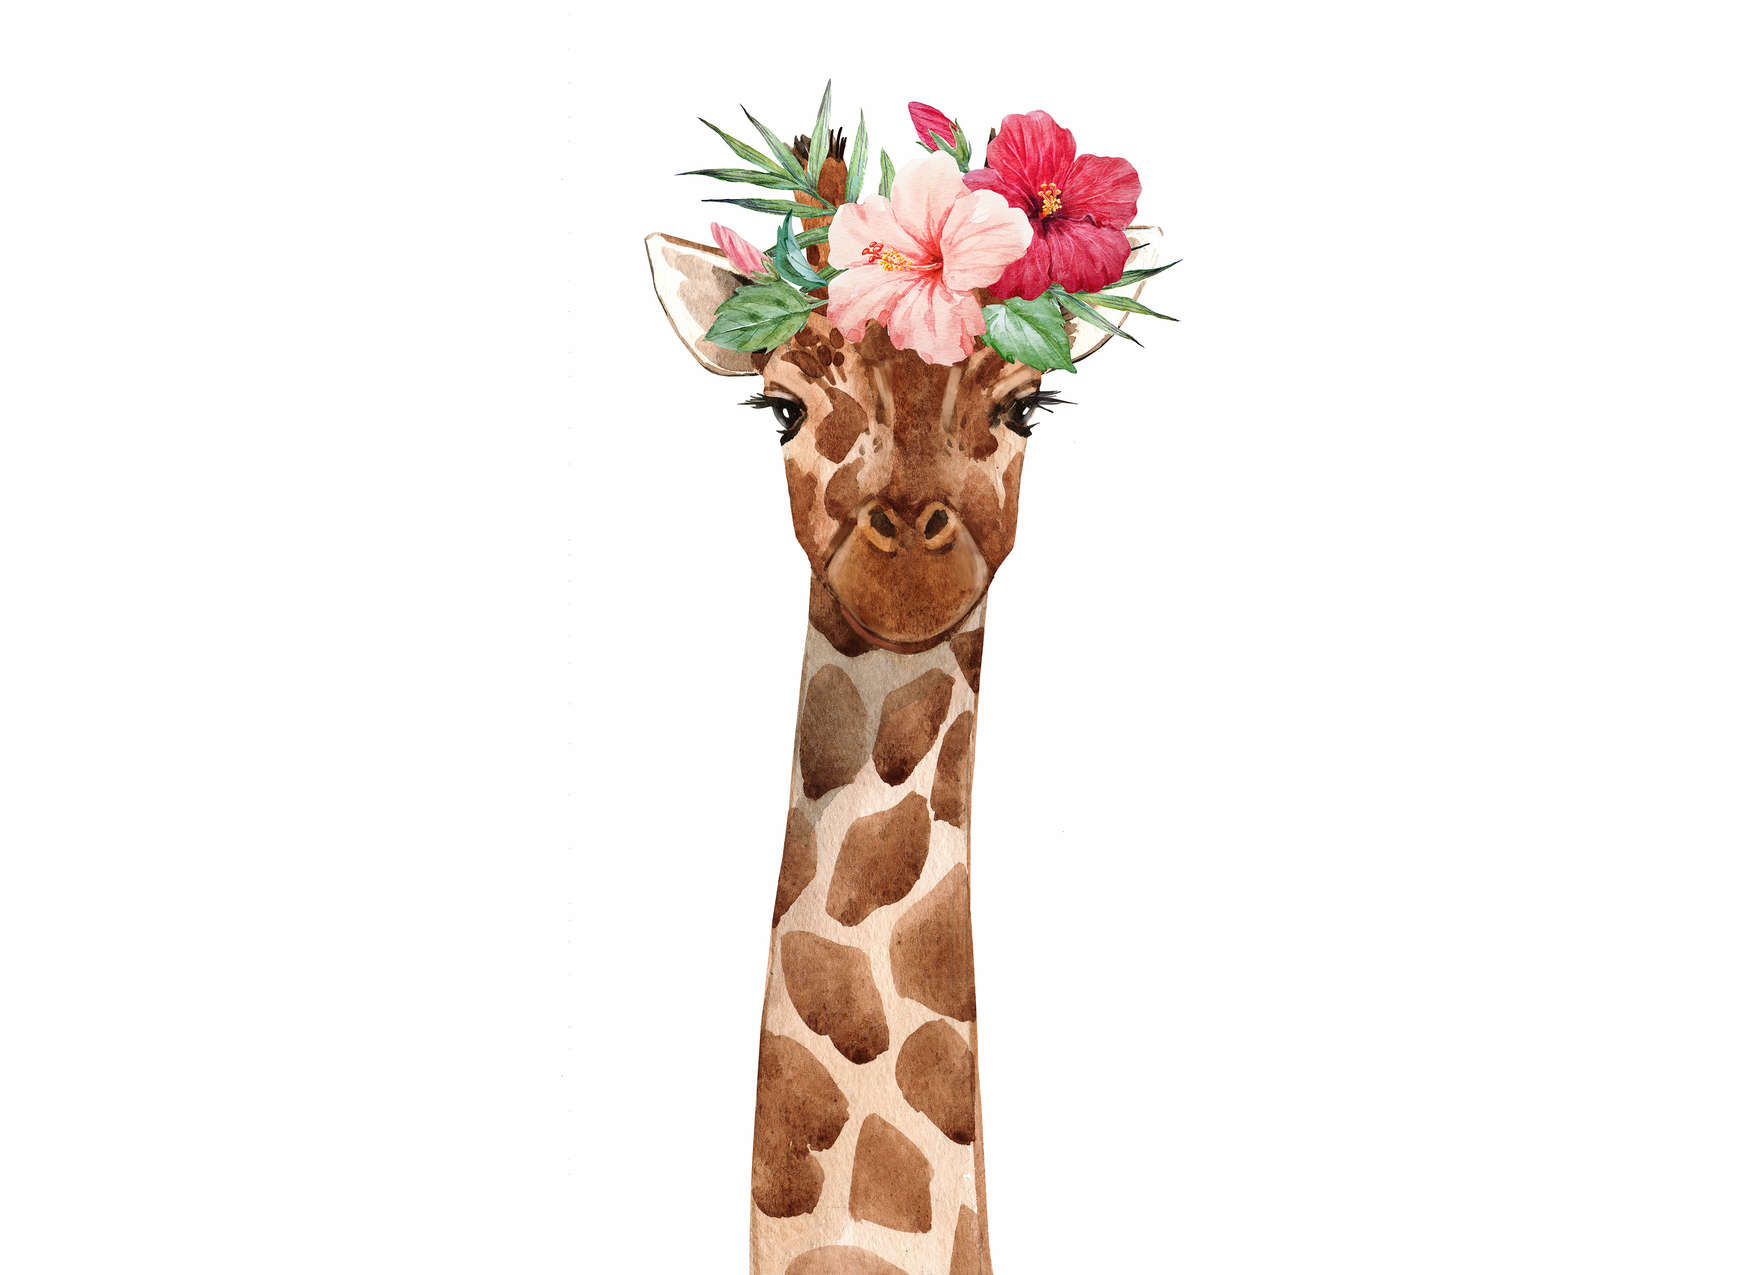             Carta da parati per la camera dei bambini con giraffa e copricapo floreale - Bianco, colorato
        